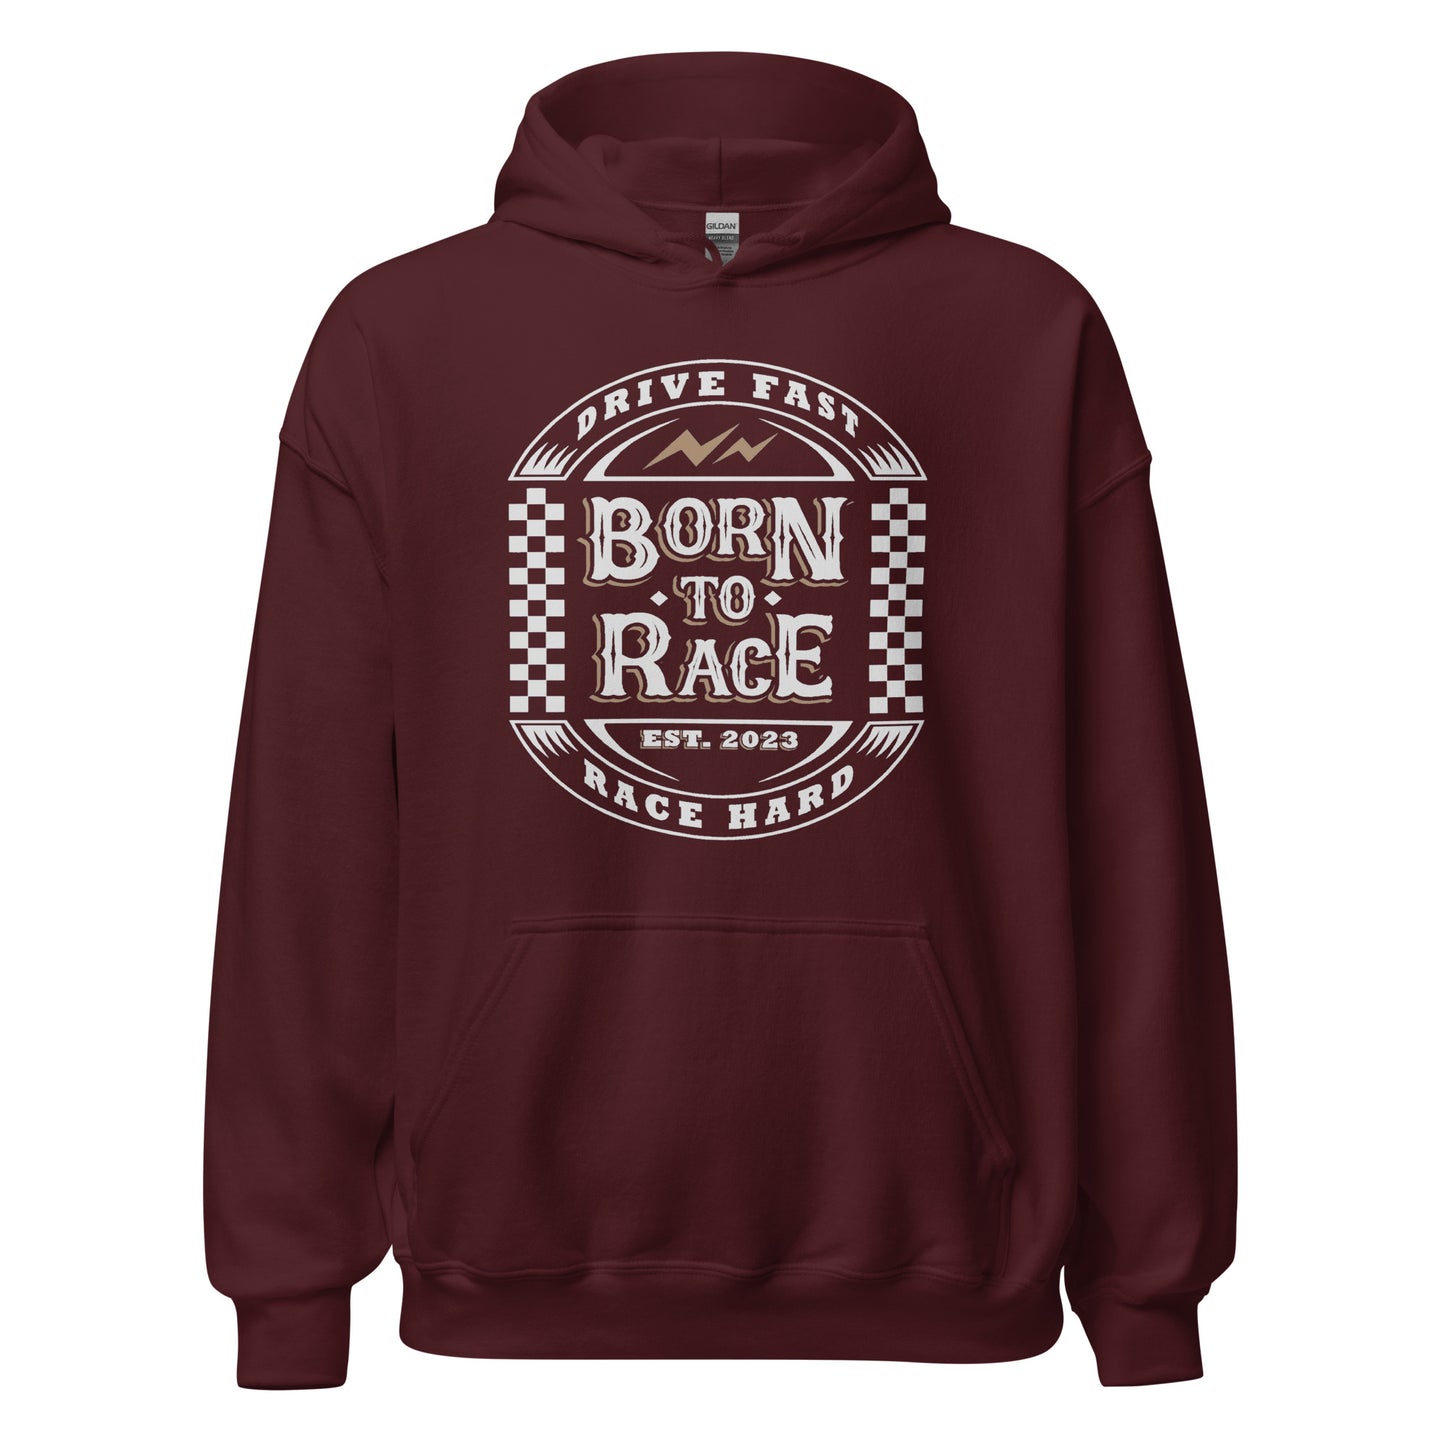 Born to Race Vintage Adult Hoodie Sweatshirt